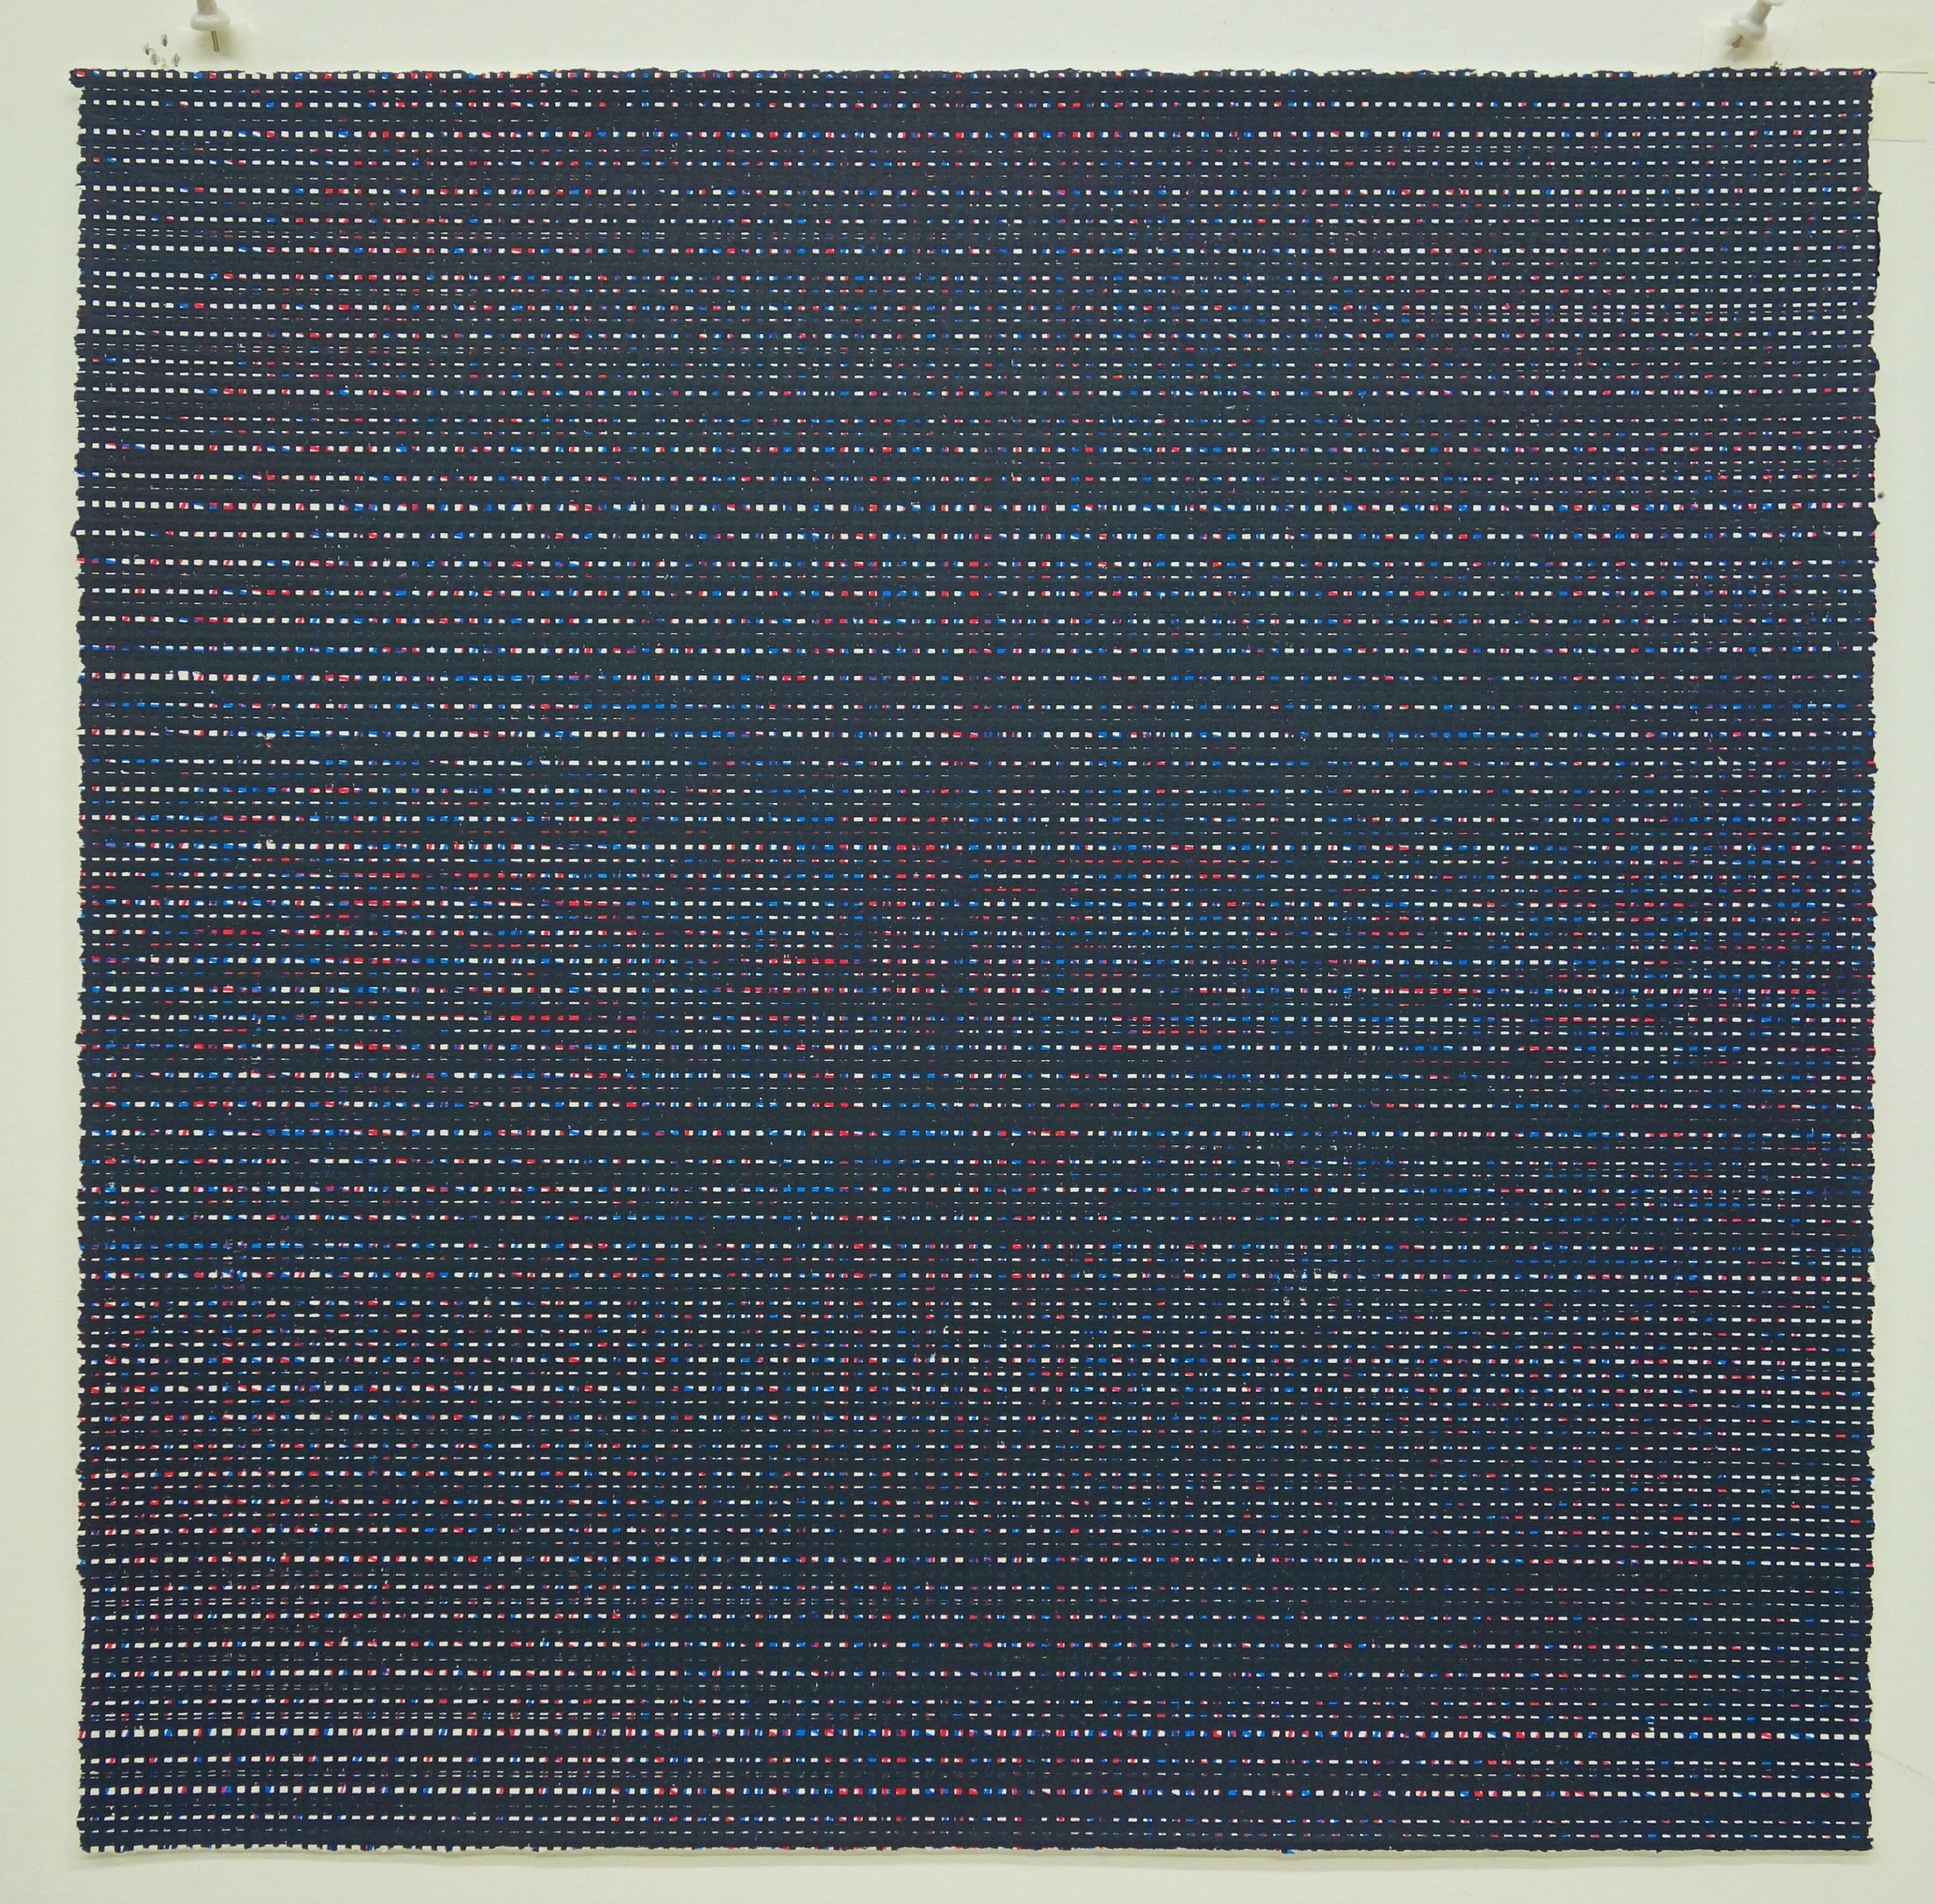 Rob de Oude, Untitled-Wassaic 6, 2016, silkscreen, 18 x 18, Minimalist 6